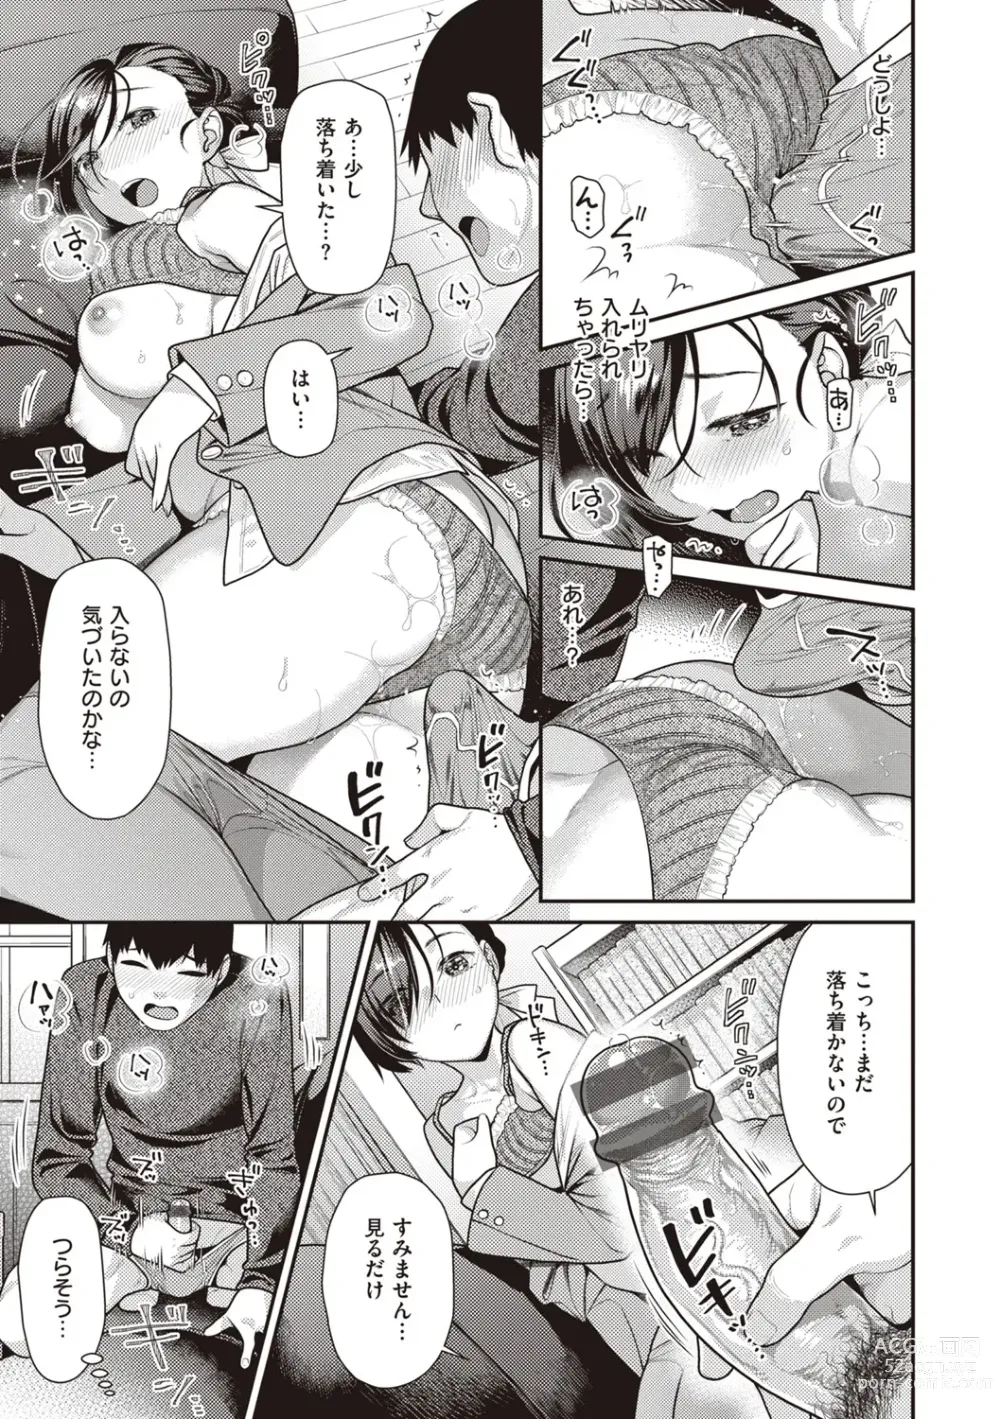 Page 151 of manga Totsumachi Nyanko